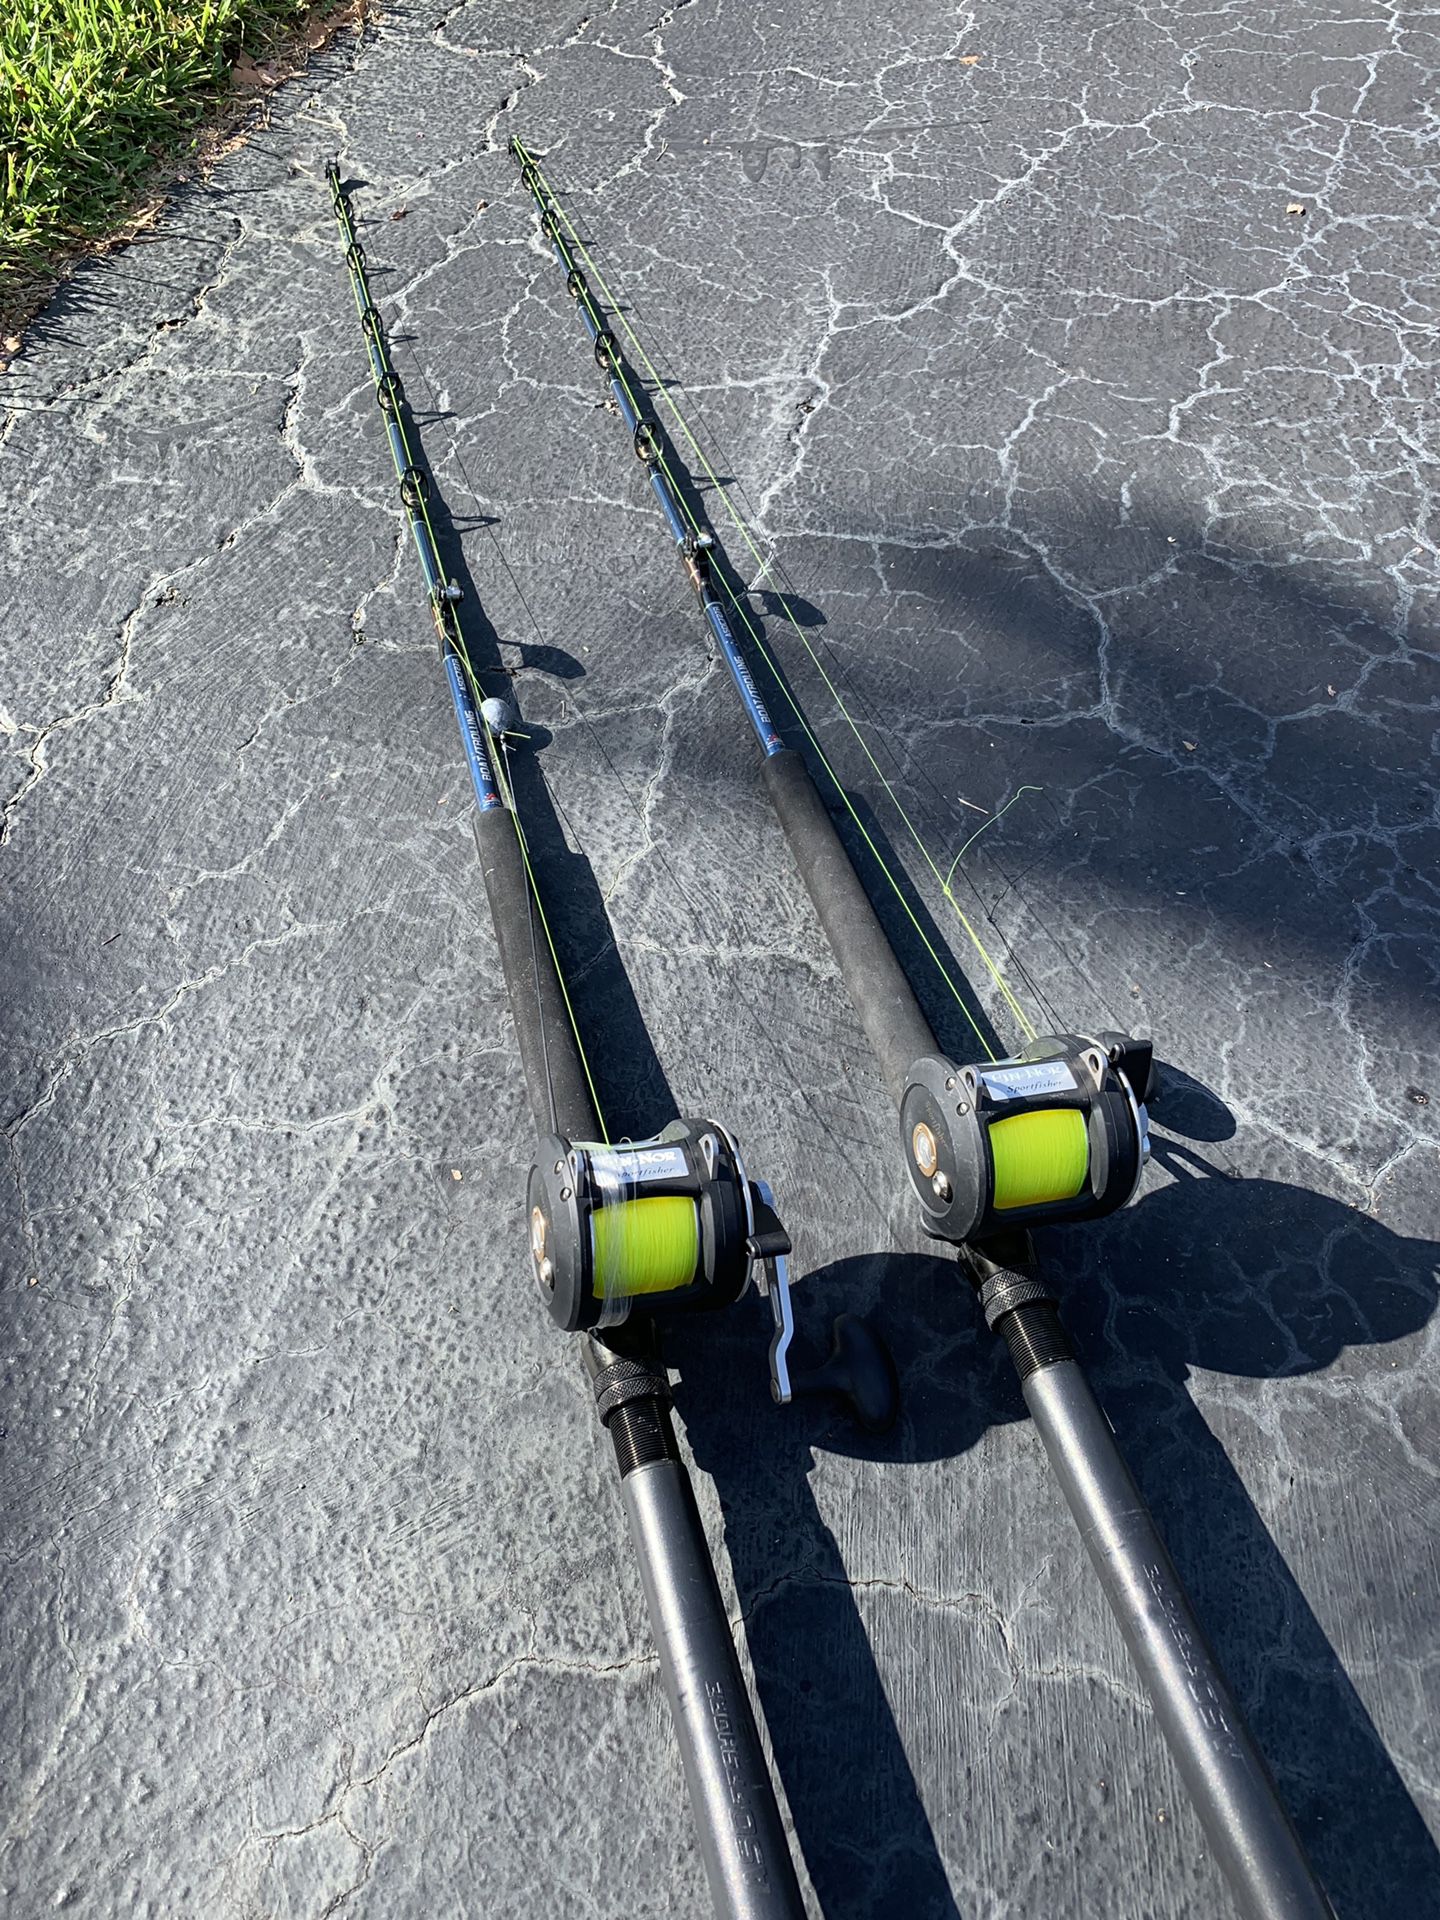 Nice pair fishing rods